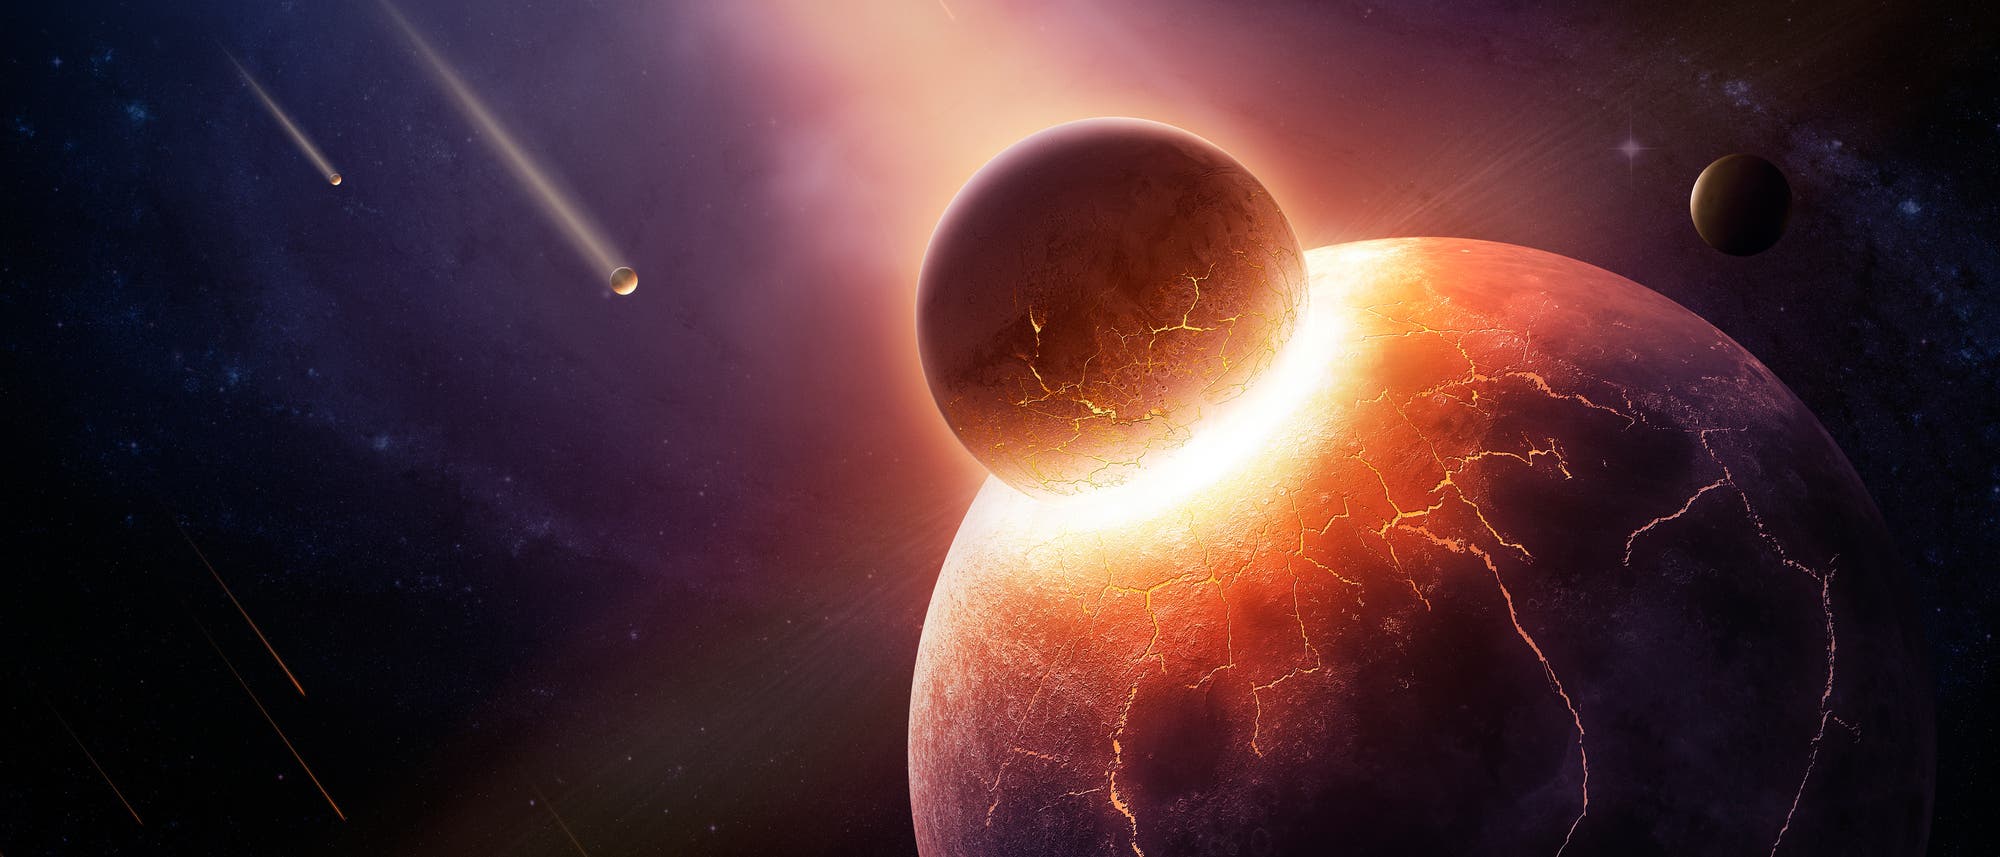 Künstlerische Darstellung der Kollision eines Planeten mit einem deutlich kleineren Planetoiden.